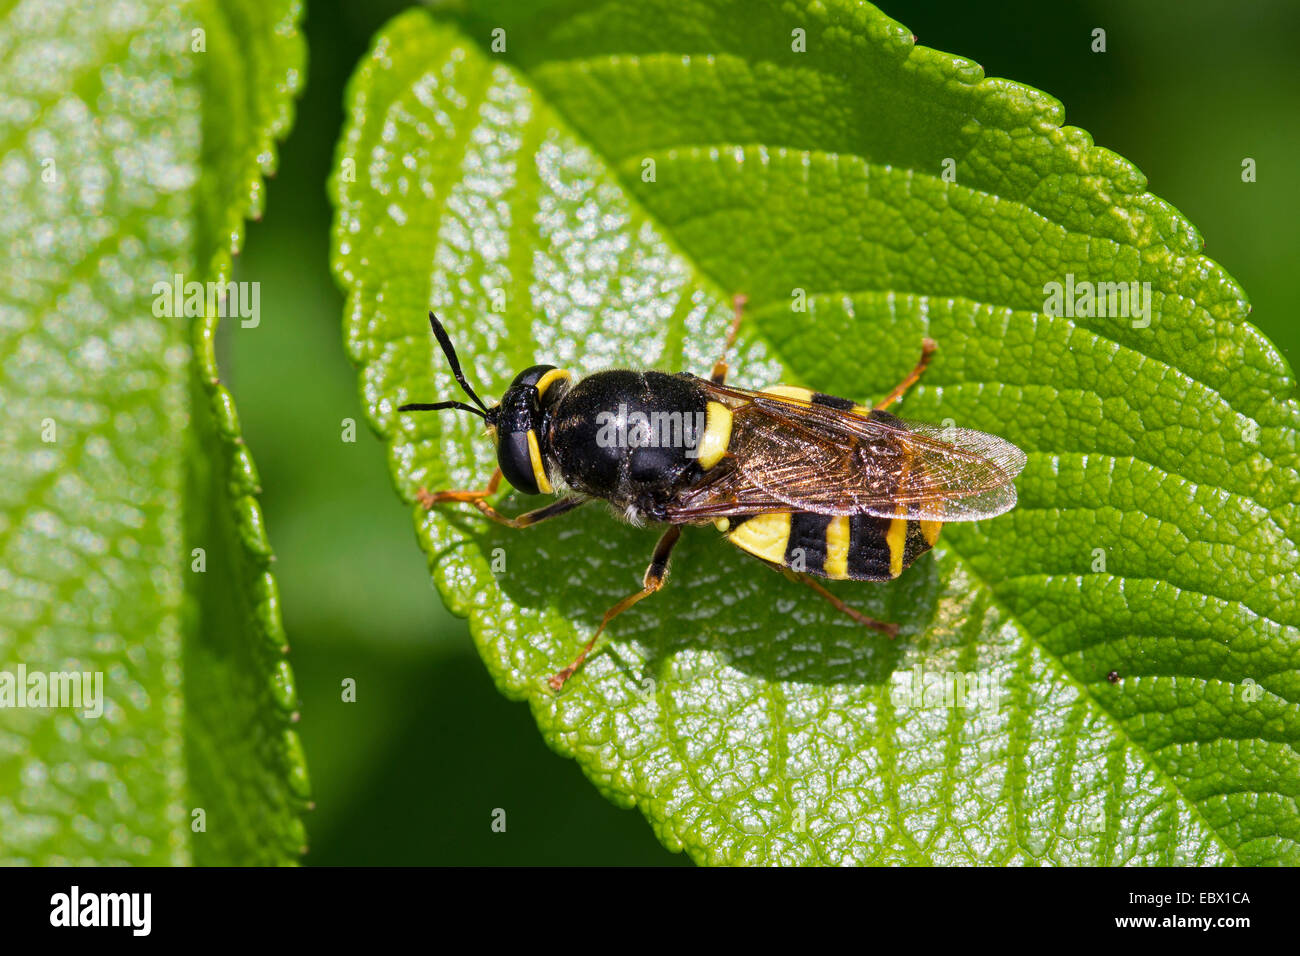 Banded general soldier fly (Stratiomys potamida, Stratiomys splendens), on a leaf, Germany Stock Photo